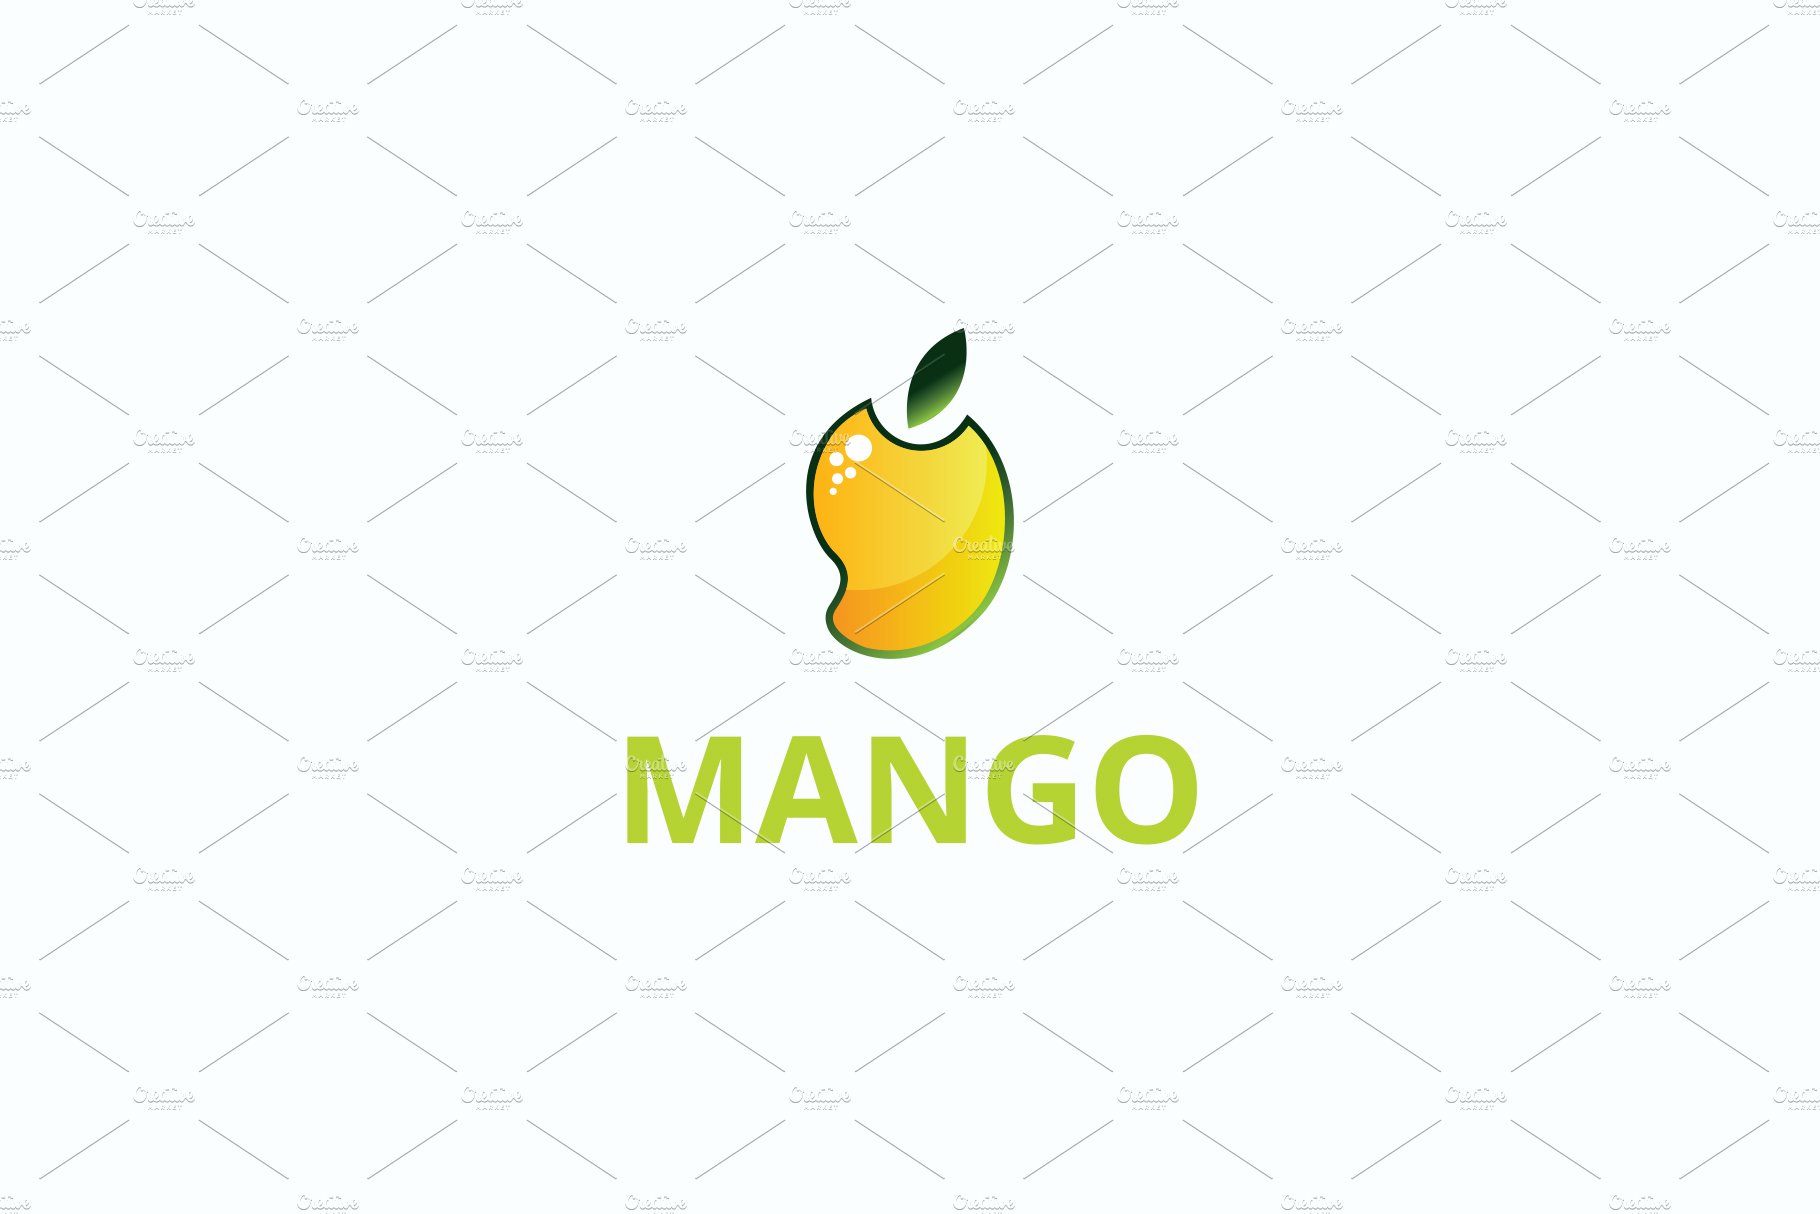 Mango Practice Management